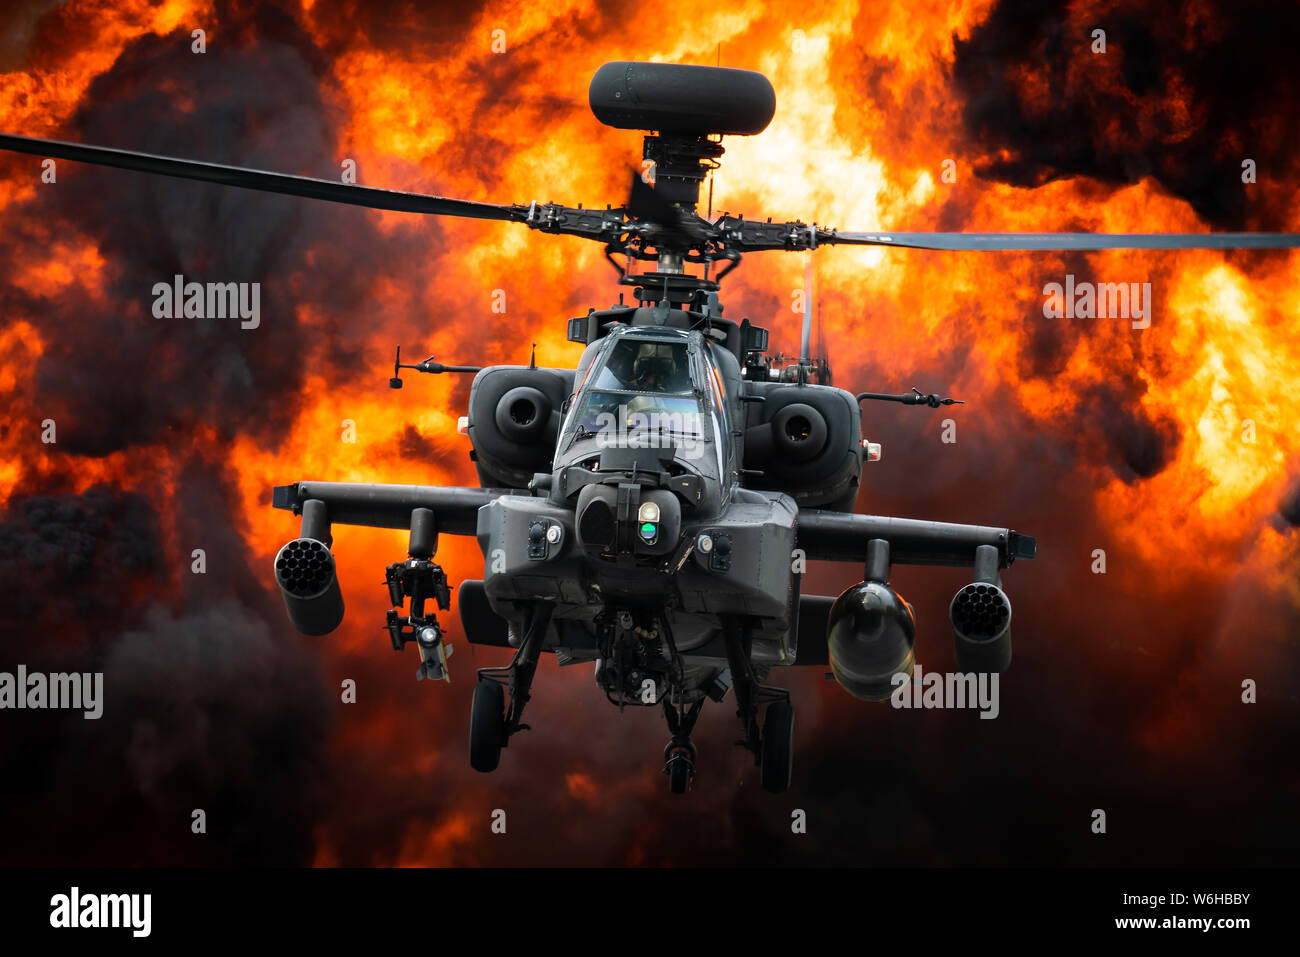 Un hélicoptère d'attaque Apache AgustaWestland de l'Army Air Corps en face d'une grosse explosion. Banque D'Images